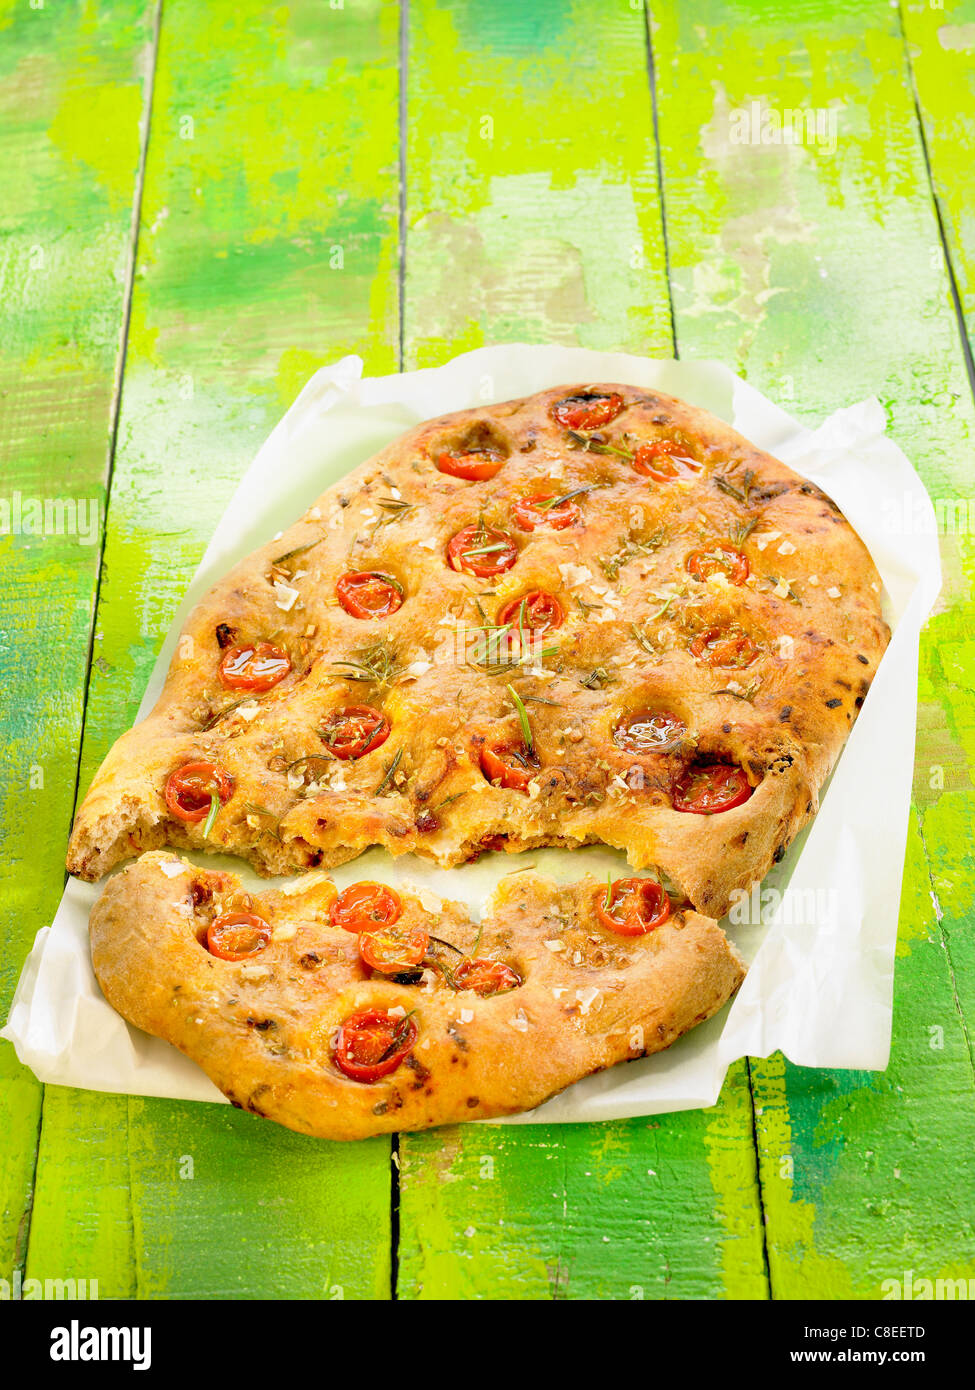 Cherry tomato and rosemary pizza bread Stock Photo